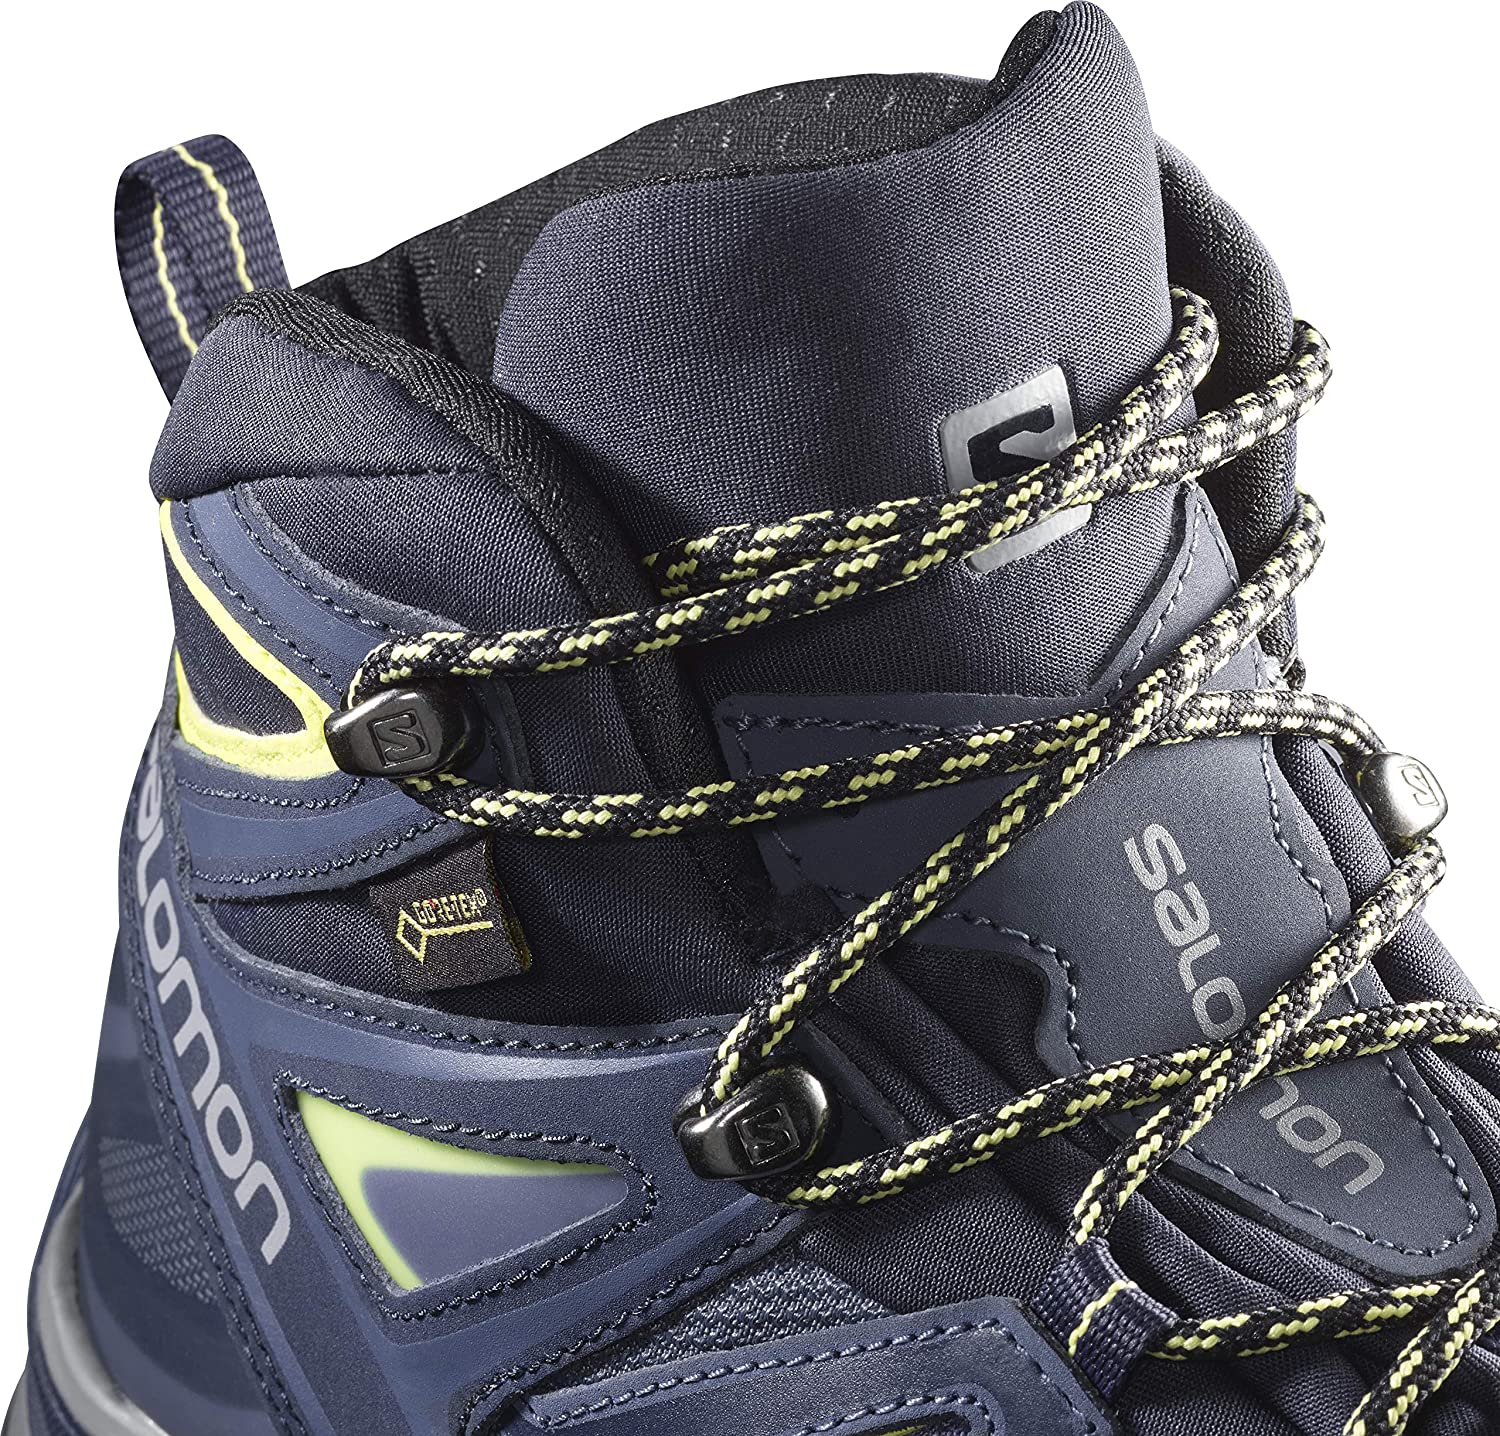 MID GTX W Hiking Boots | eBay